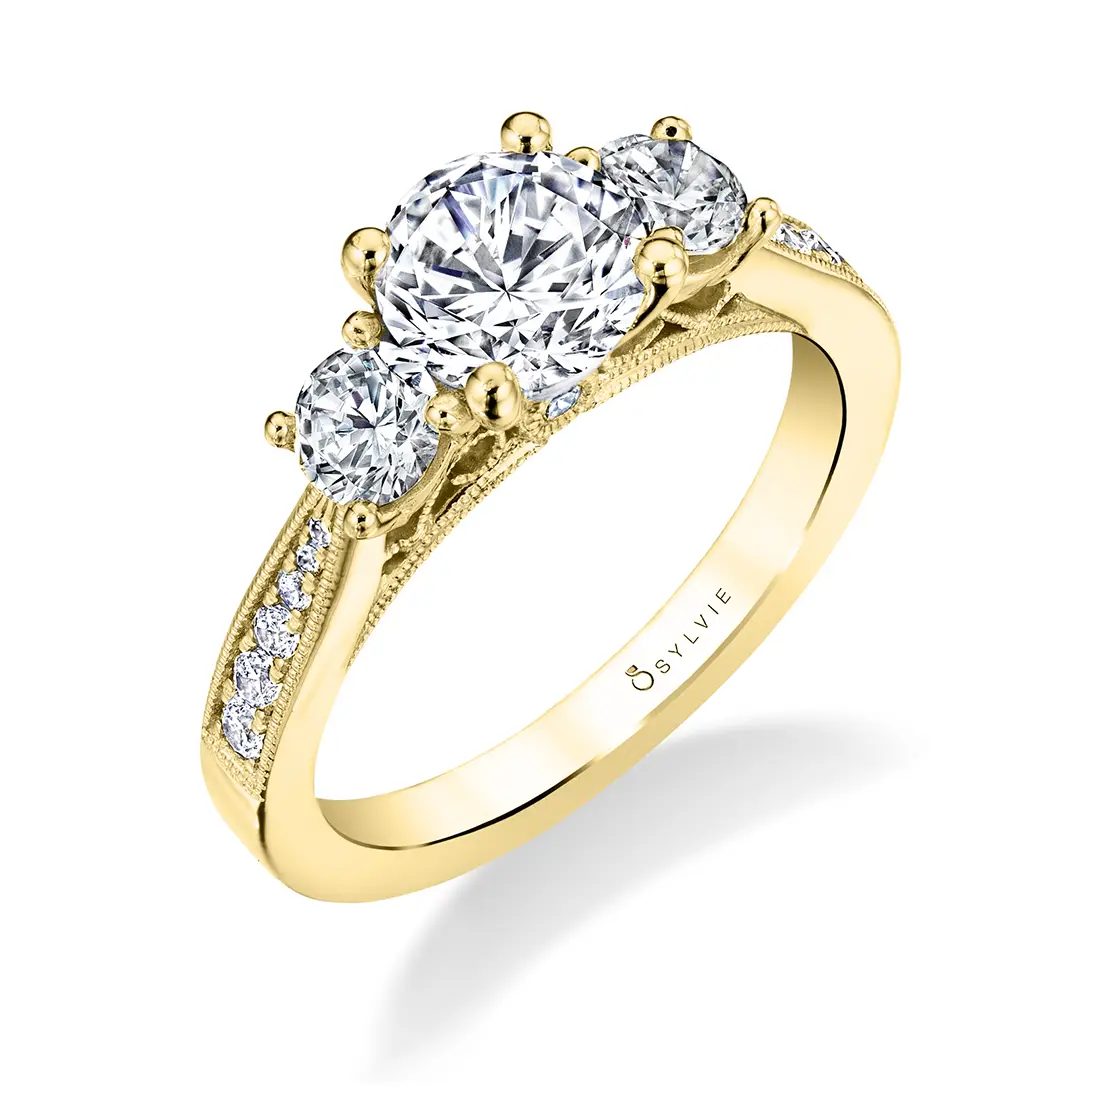 Round Cut Three Stone Engagement Ring with Round Diamonds in Yellow Gold - Catarina